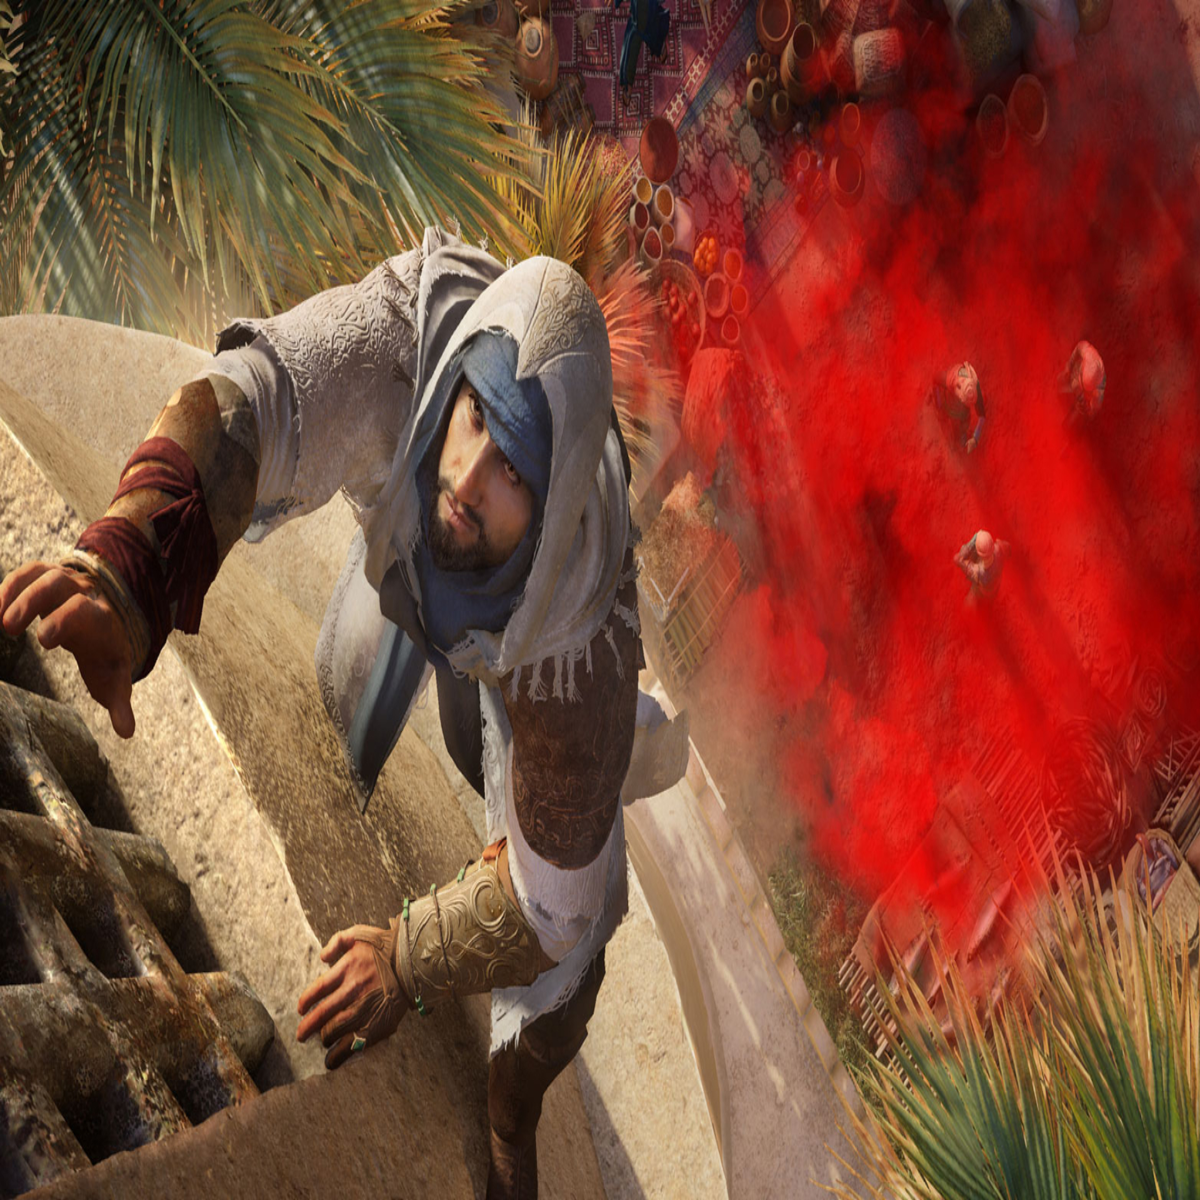 Assassin's Creed e The Sims 3 estão nas ofertas da semana